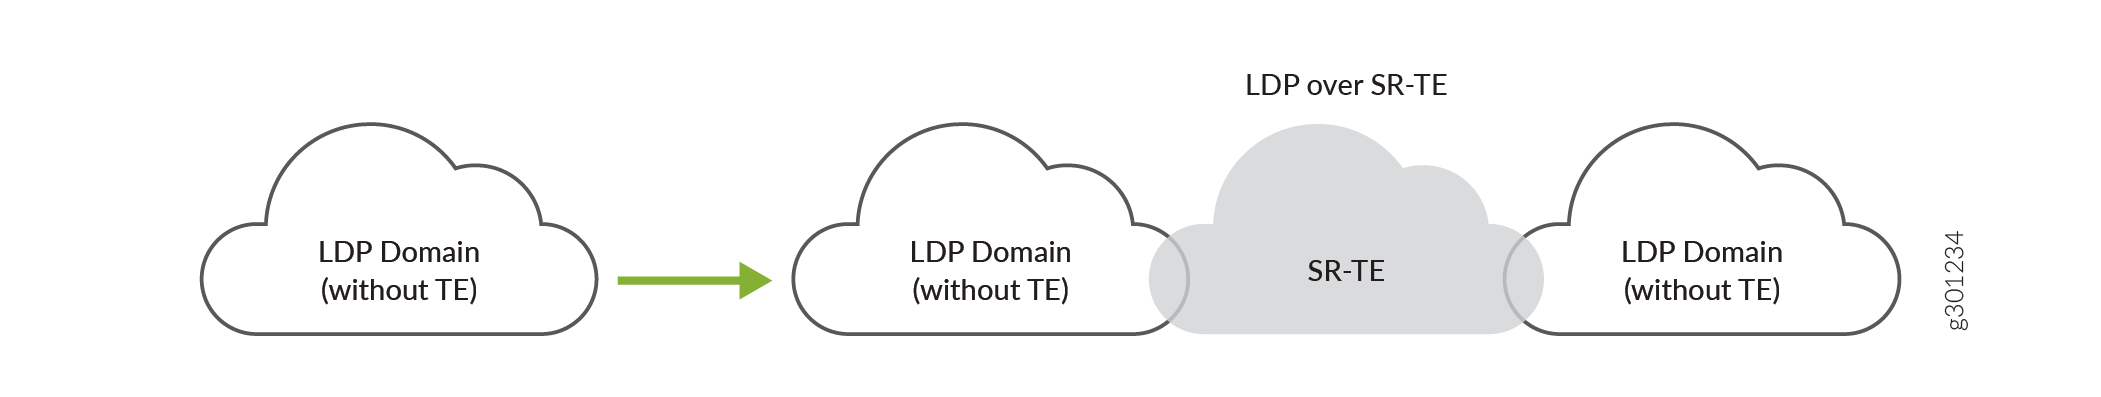 コア ネットワークの SR-TE 上で LDP ドメインを相互接続します。